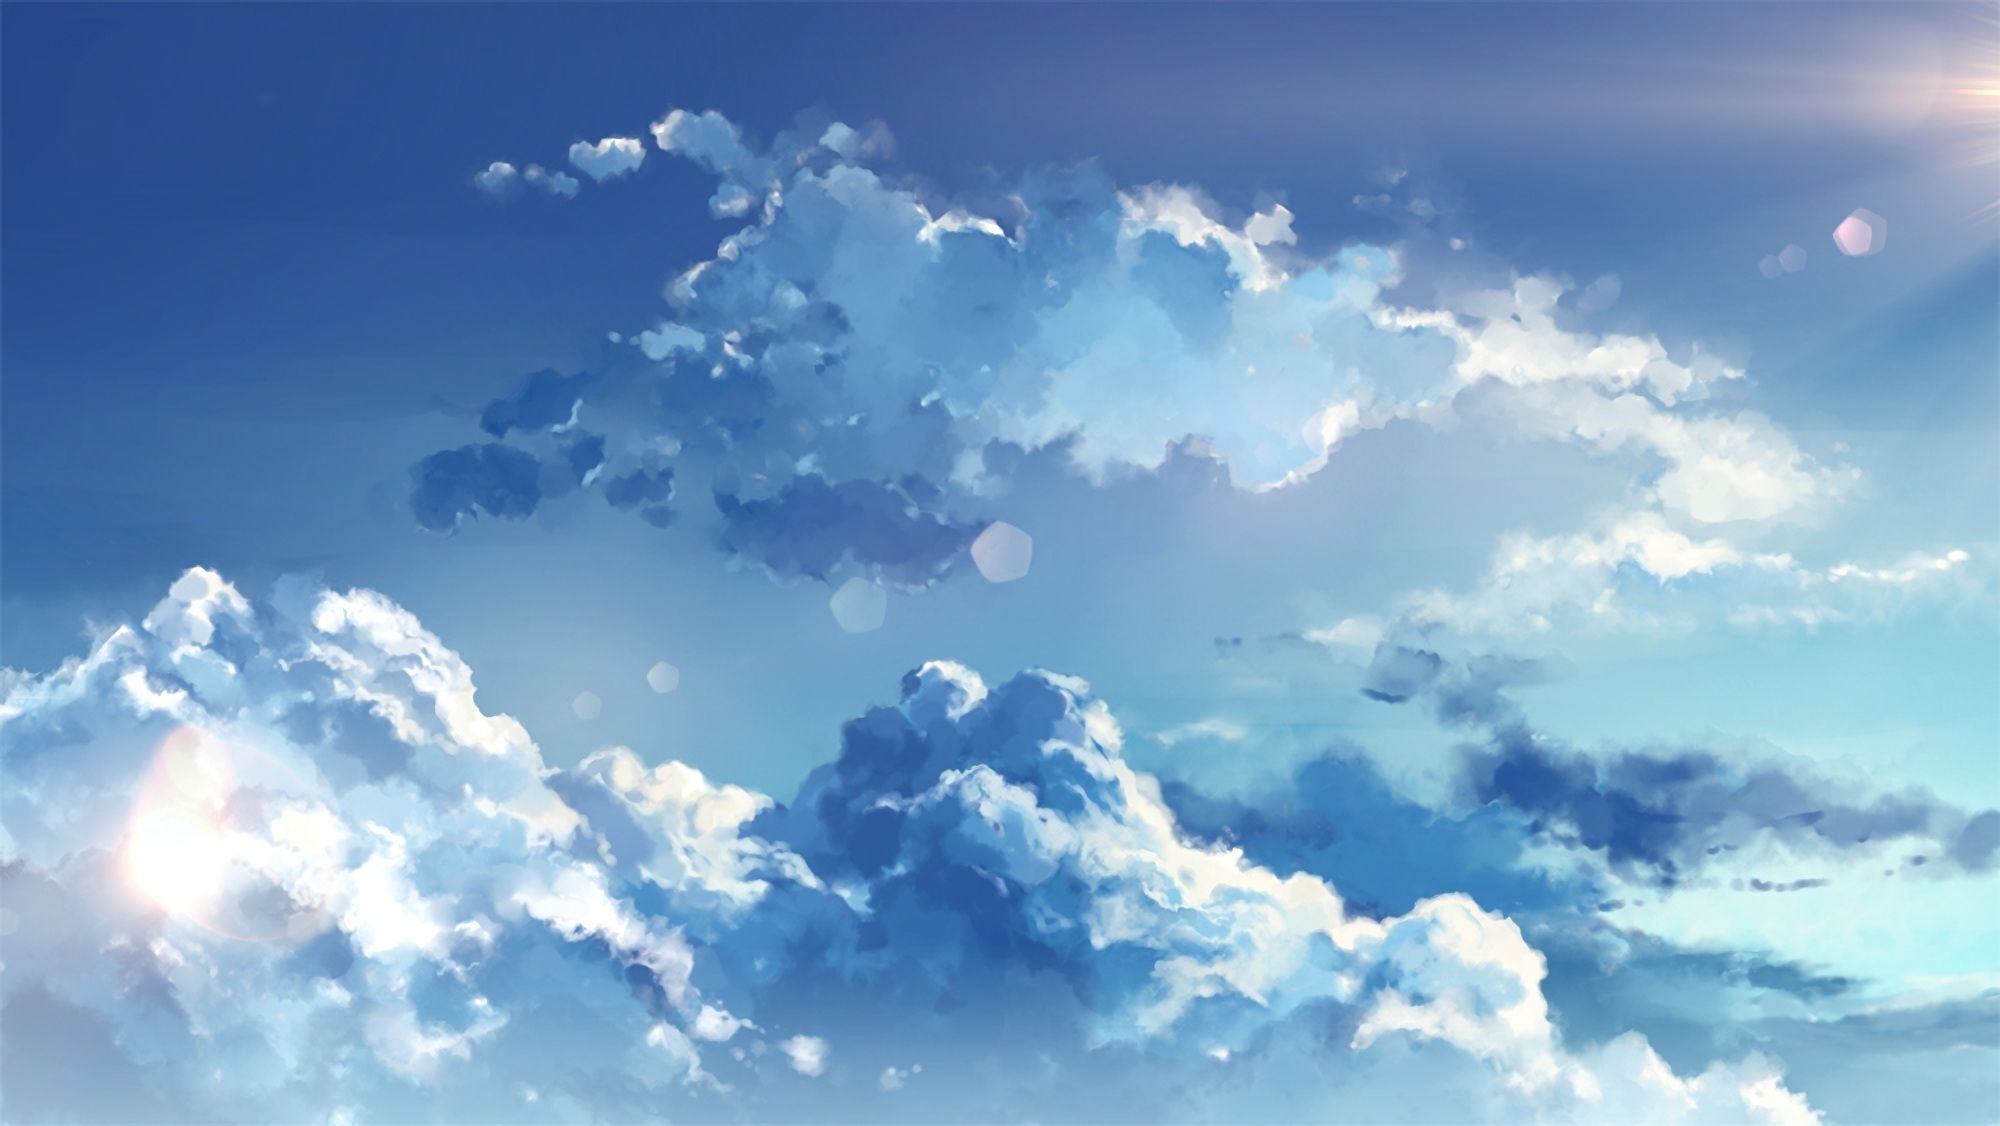 Với hình nền Cute Anime Cloud Wallpaper, bạn sẽ được đắm mình trong không gian mơ màng và lãng mạn. Hình ảnh đáng yêu này sẽ khiến cho bạn cảm thấy tràn đầy năng lượng tích cực và sẵn sàng đối mặt với mọi thử thách đến từ cuộc sống.